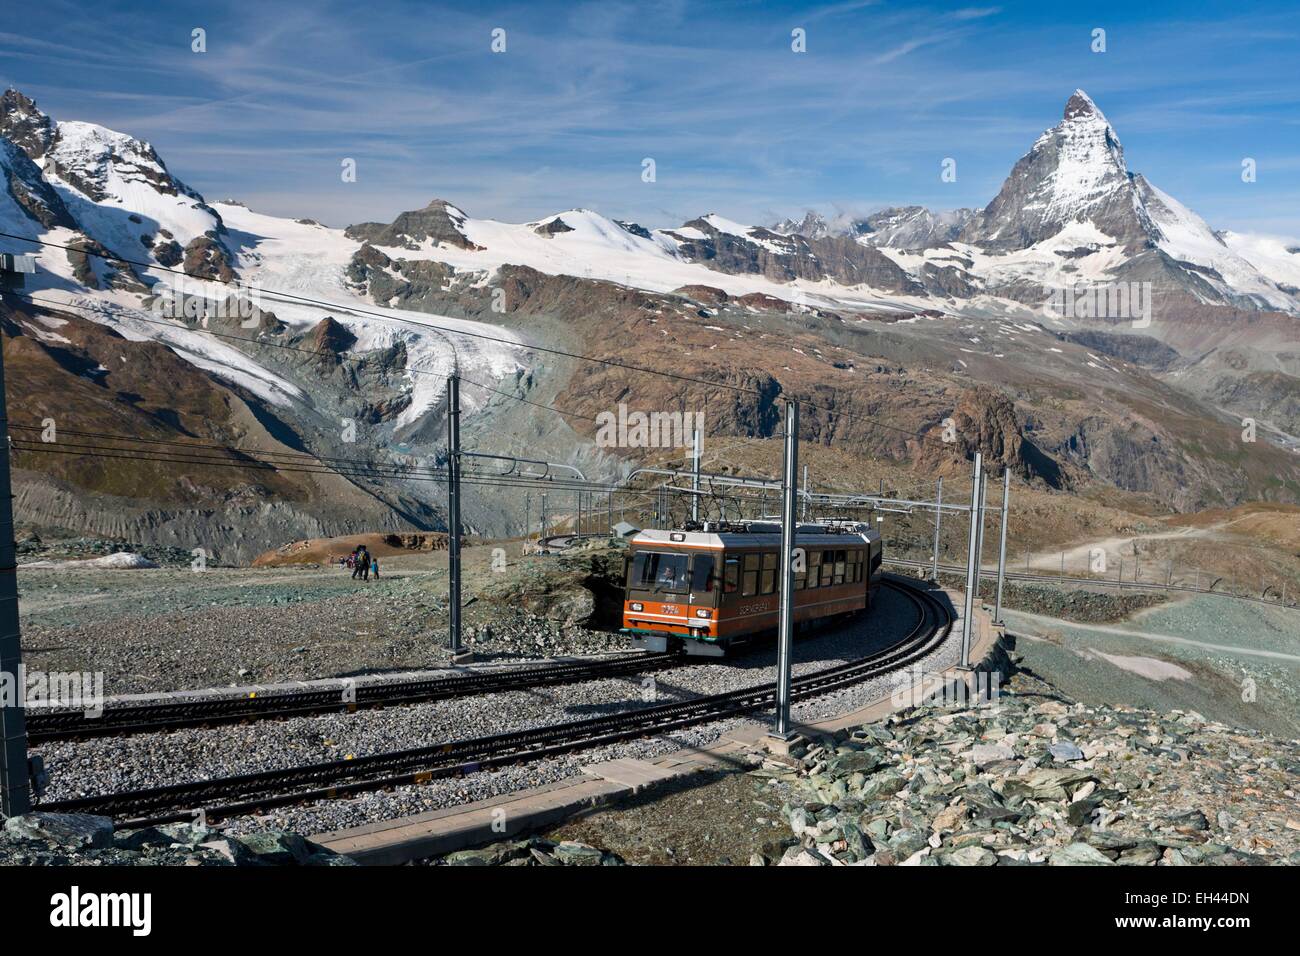 Schweiz, Kanton Wallis, Zermatt, die Zahnradbahn bis zum Gornergrat Bahn steigt 3089 Meter vor dem Matterhorn Stockfoto